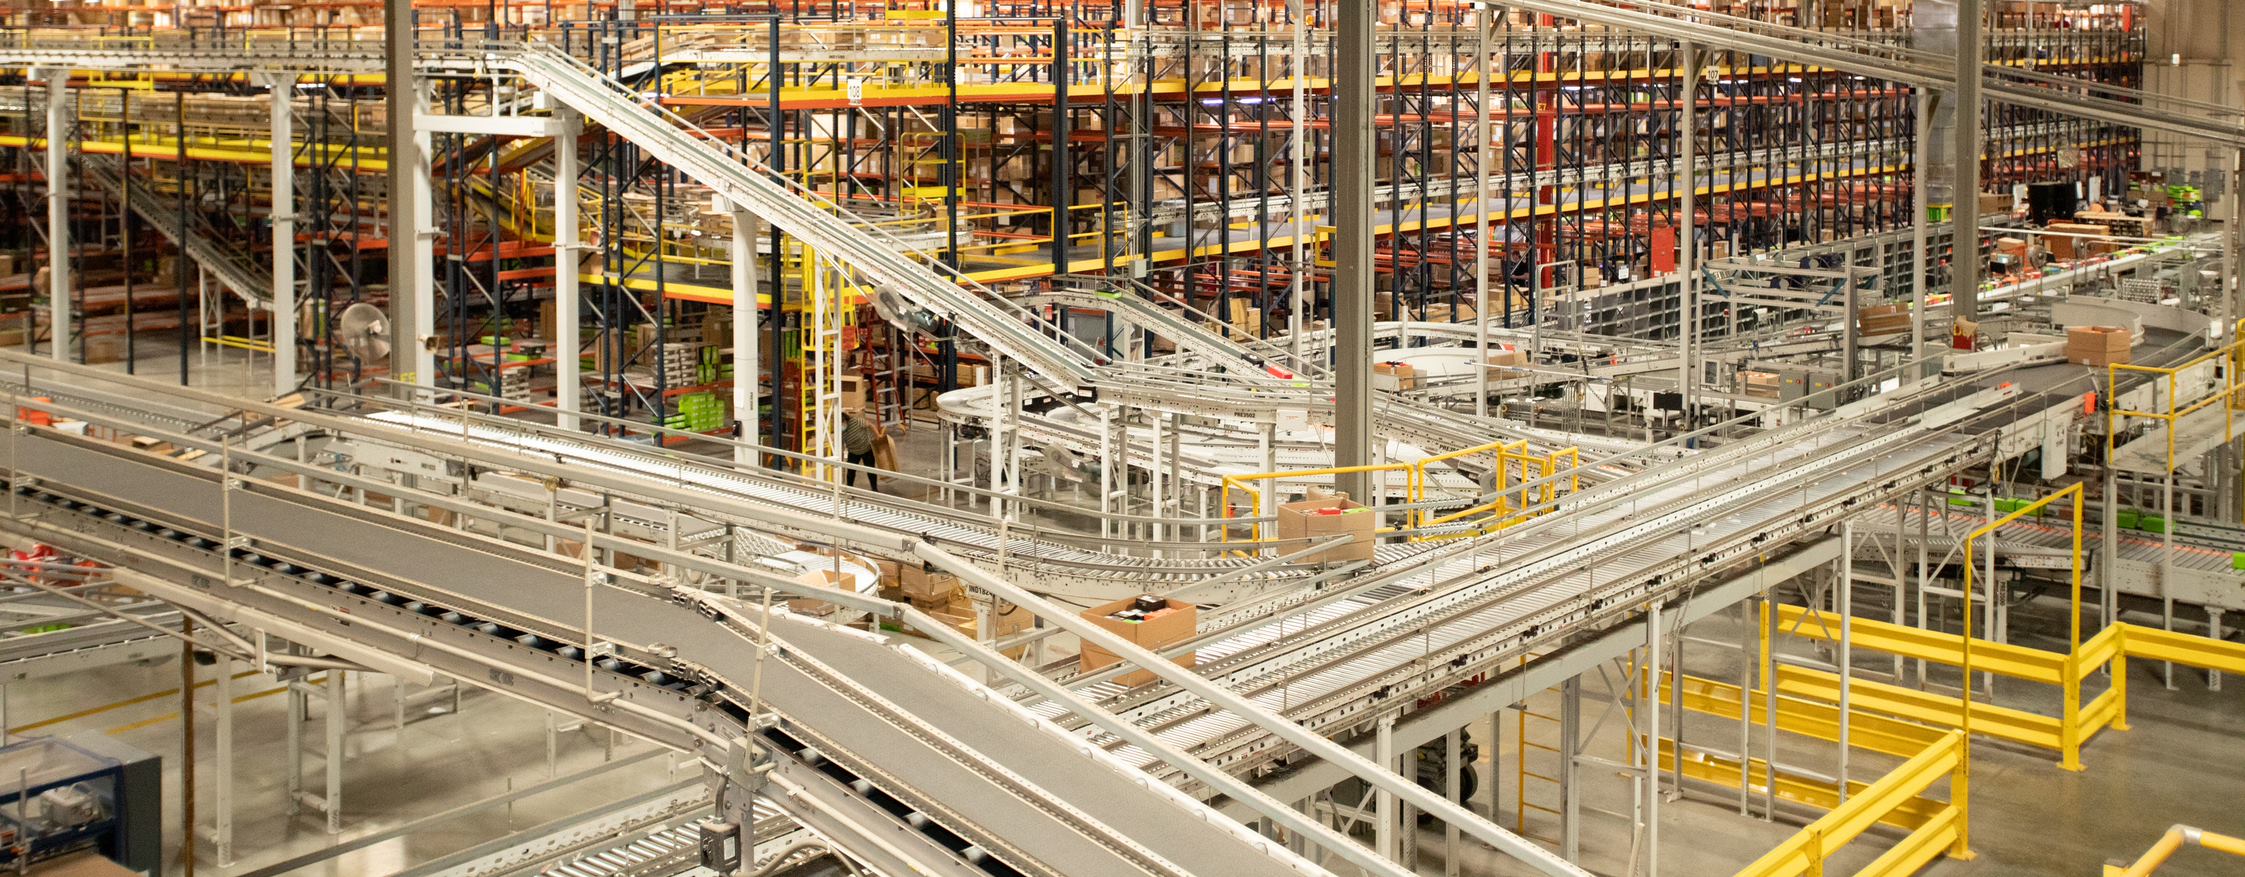 Conveyor Belts in a factory